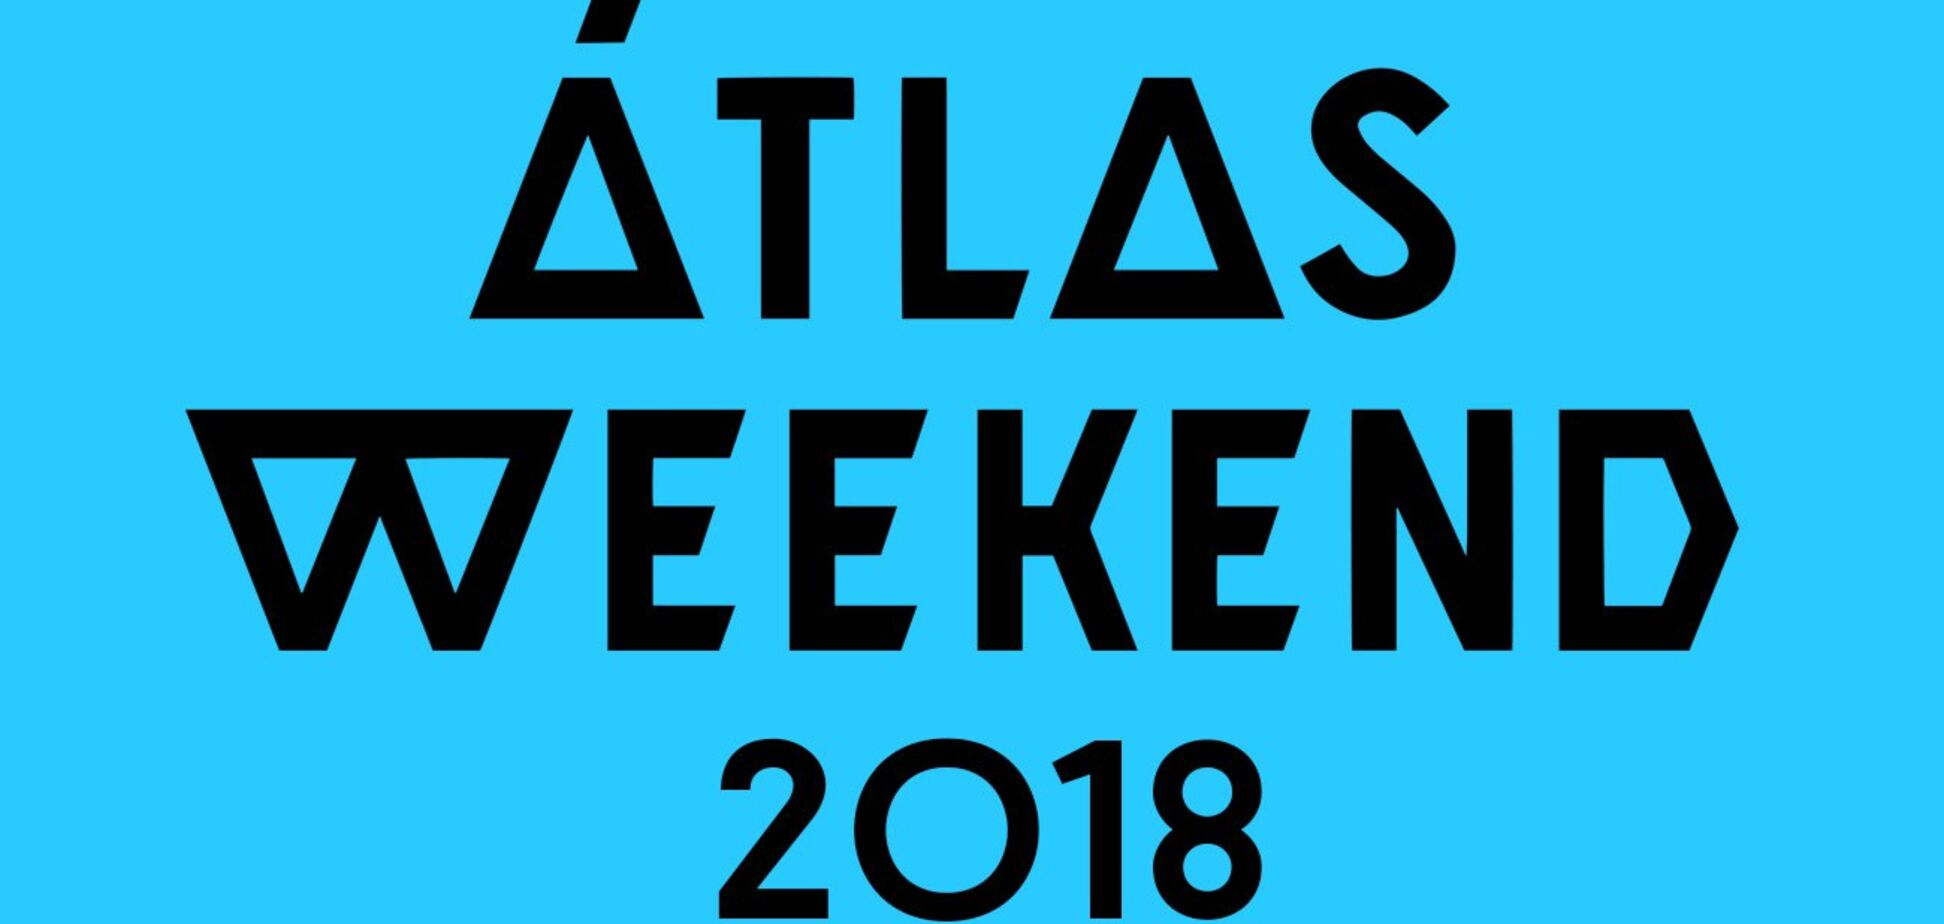 AtlasWeekend: гид по фестивалю, главные локации и расписание выступлений